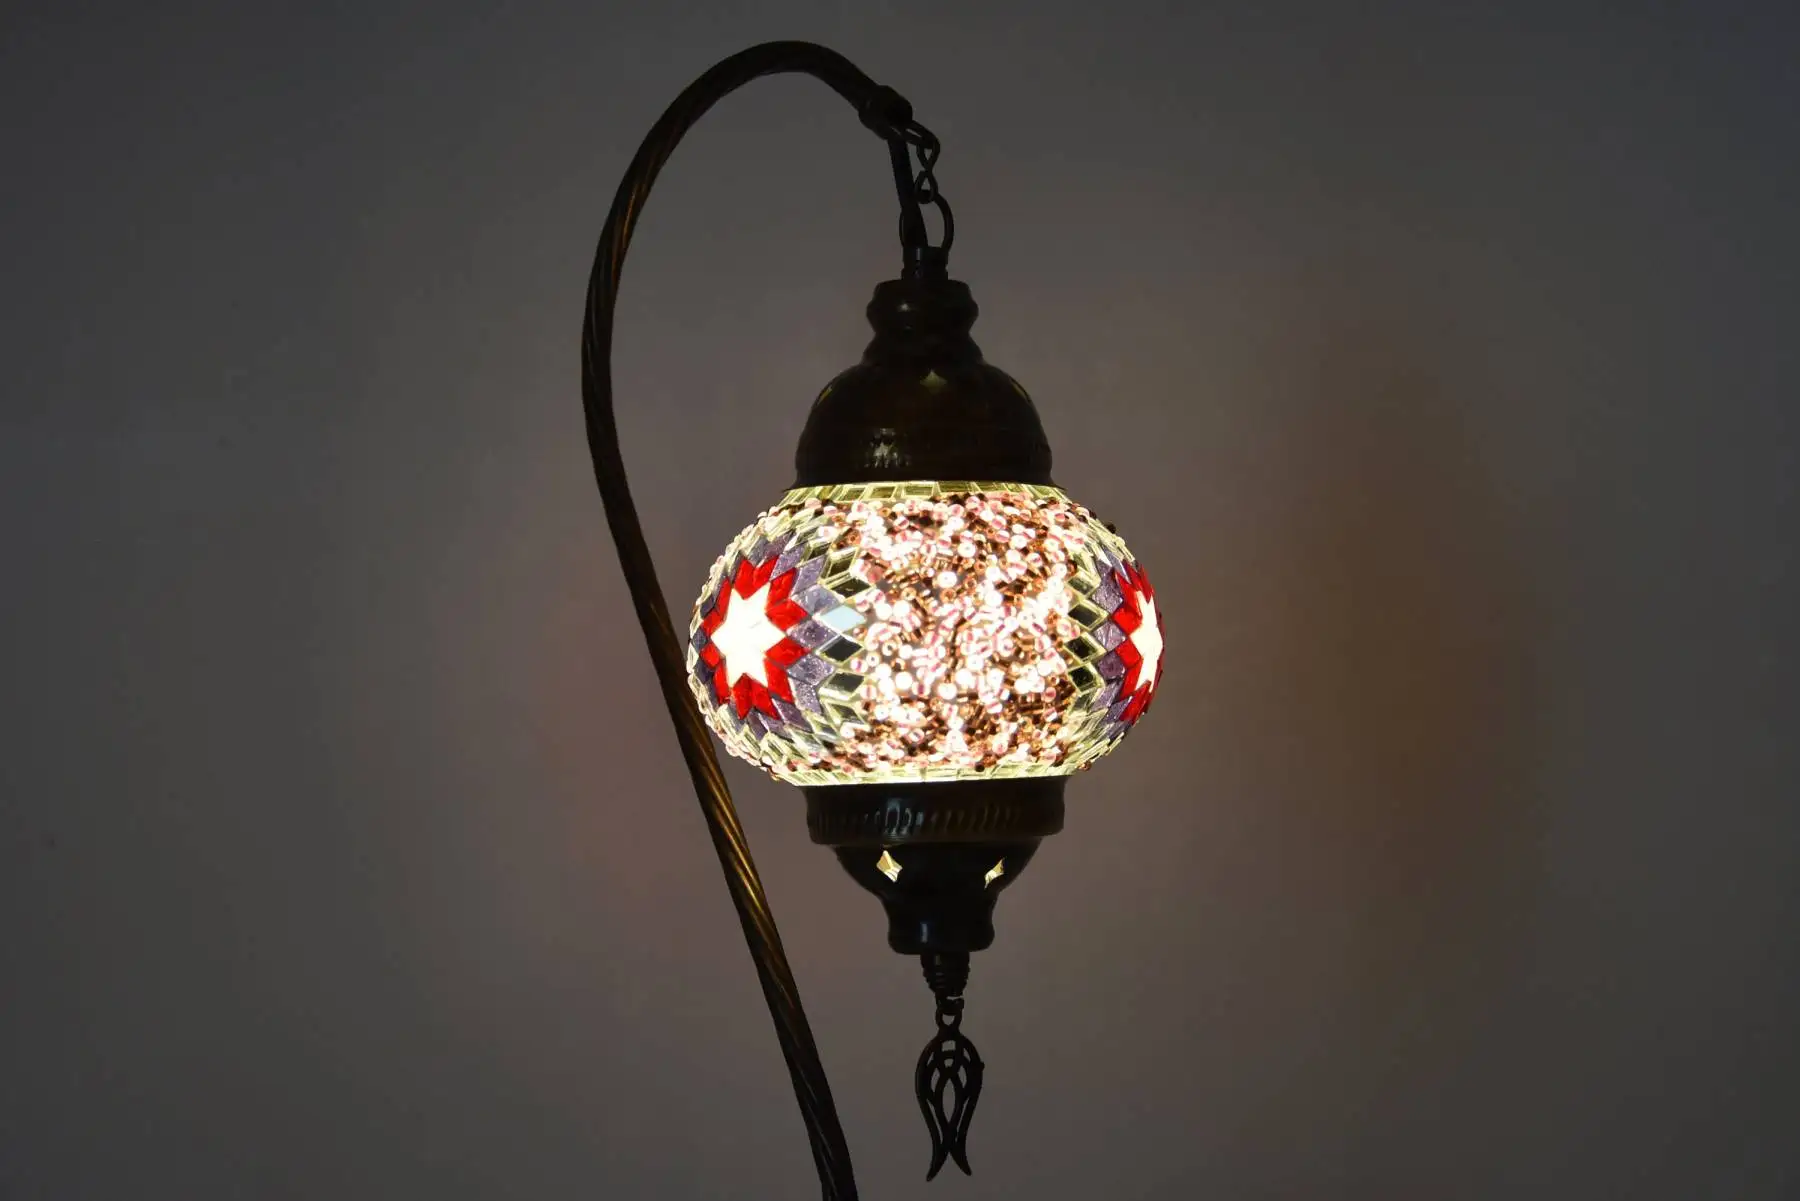 

Лампа с лебедем на шею, Турецкая мозаика ручной работы, настольная прикроватная лампа, ночник, абажур